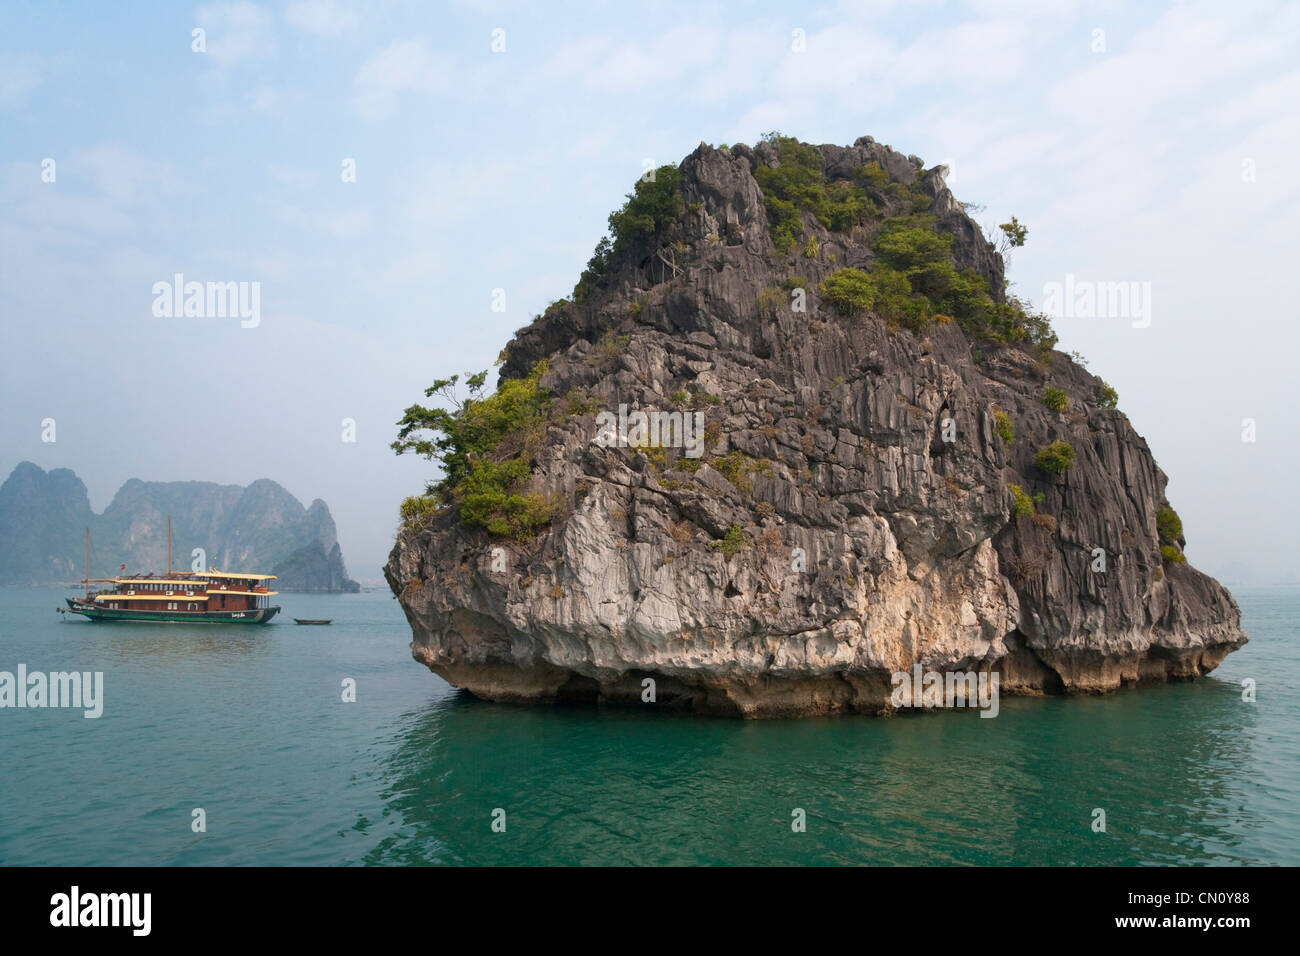 Posta indesiderata e barca isole carsico nella baia di Halong, sito Patrimonio Mondiale dell'UNESCO, la baia di Ha Long, Vietnam Foto Stock